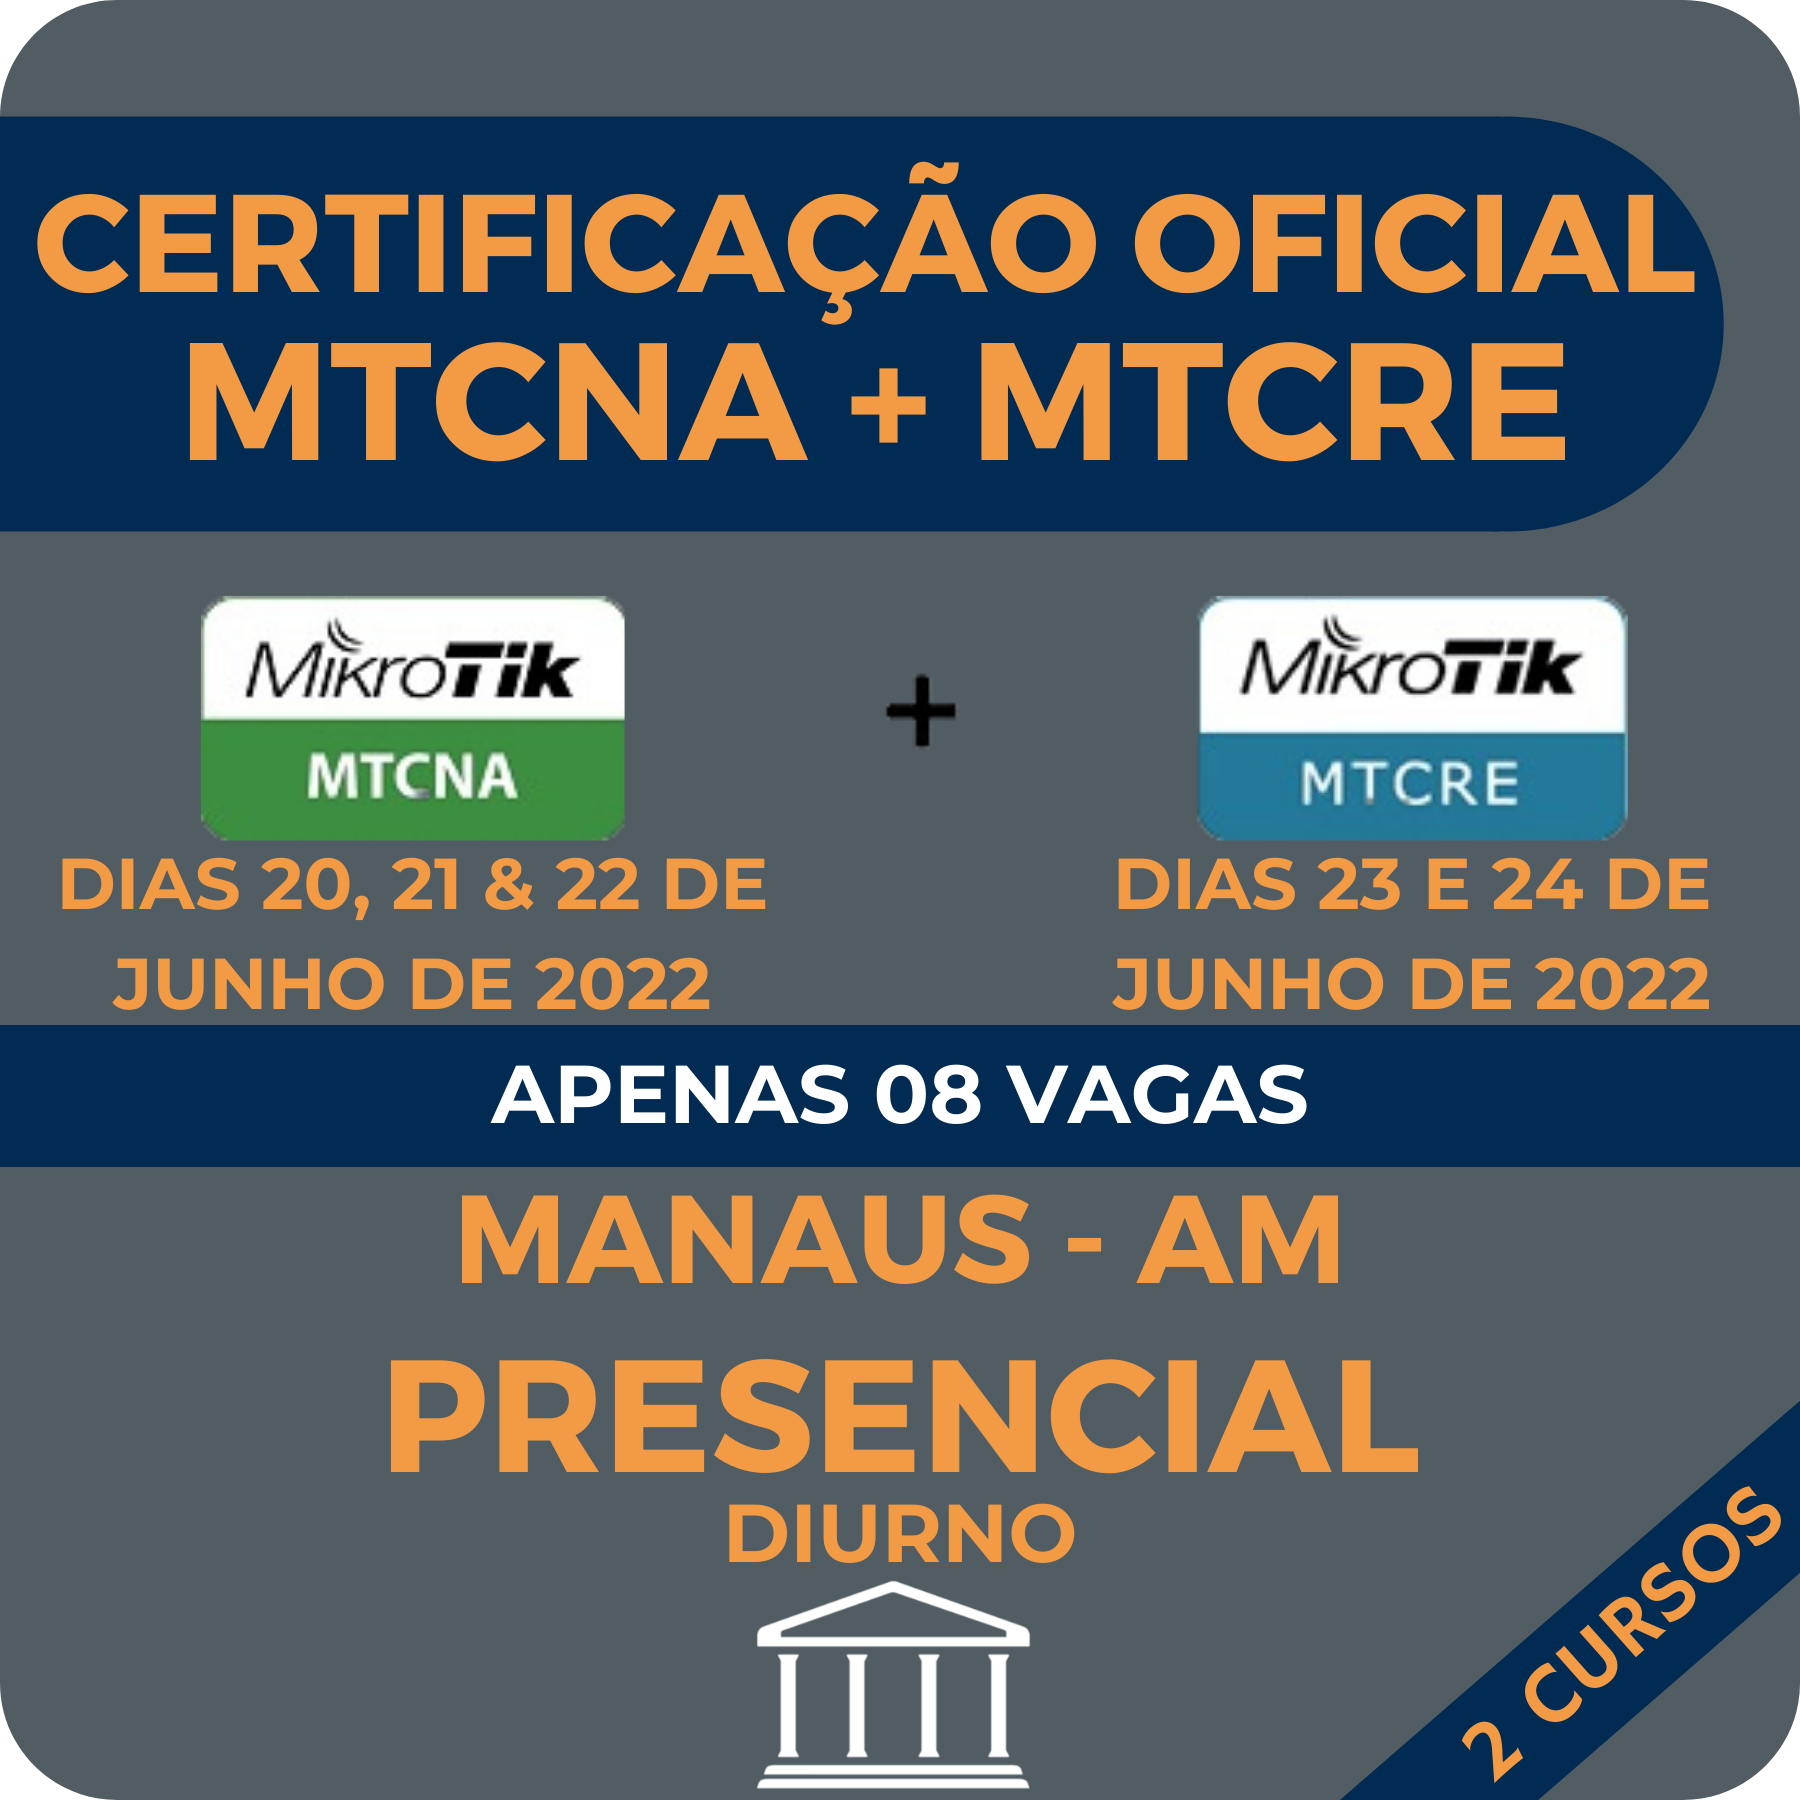 CERTIFICAÇÃO OFICIAL MIKROTIK MTCNA + MTCRE - PRESENCIAL MANAUS - AM com ANDERSON MATOZINHOS  - Voz e Dados Academy